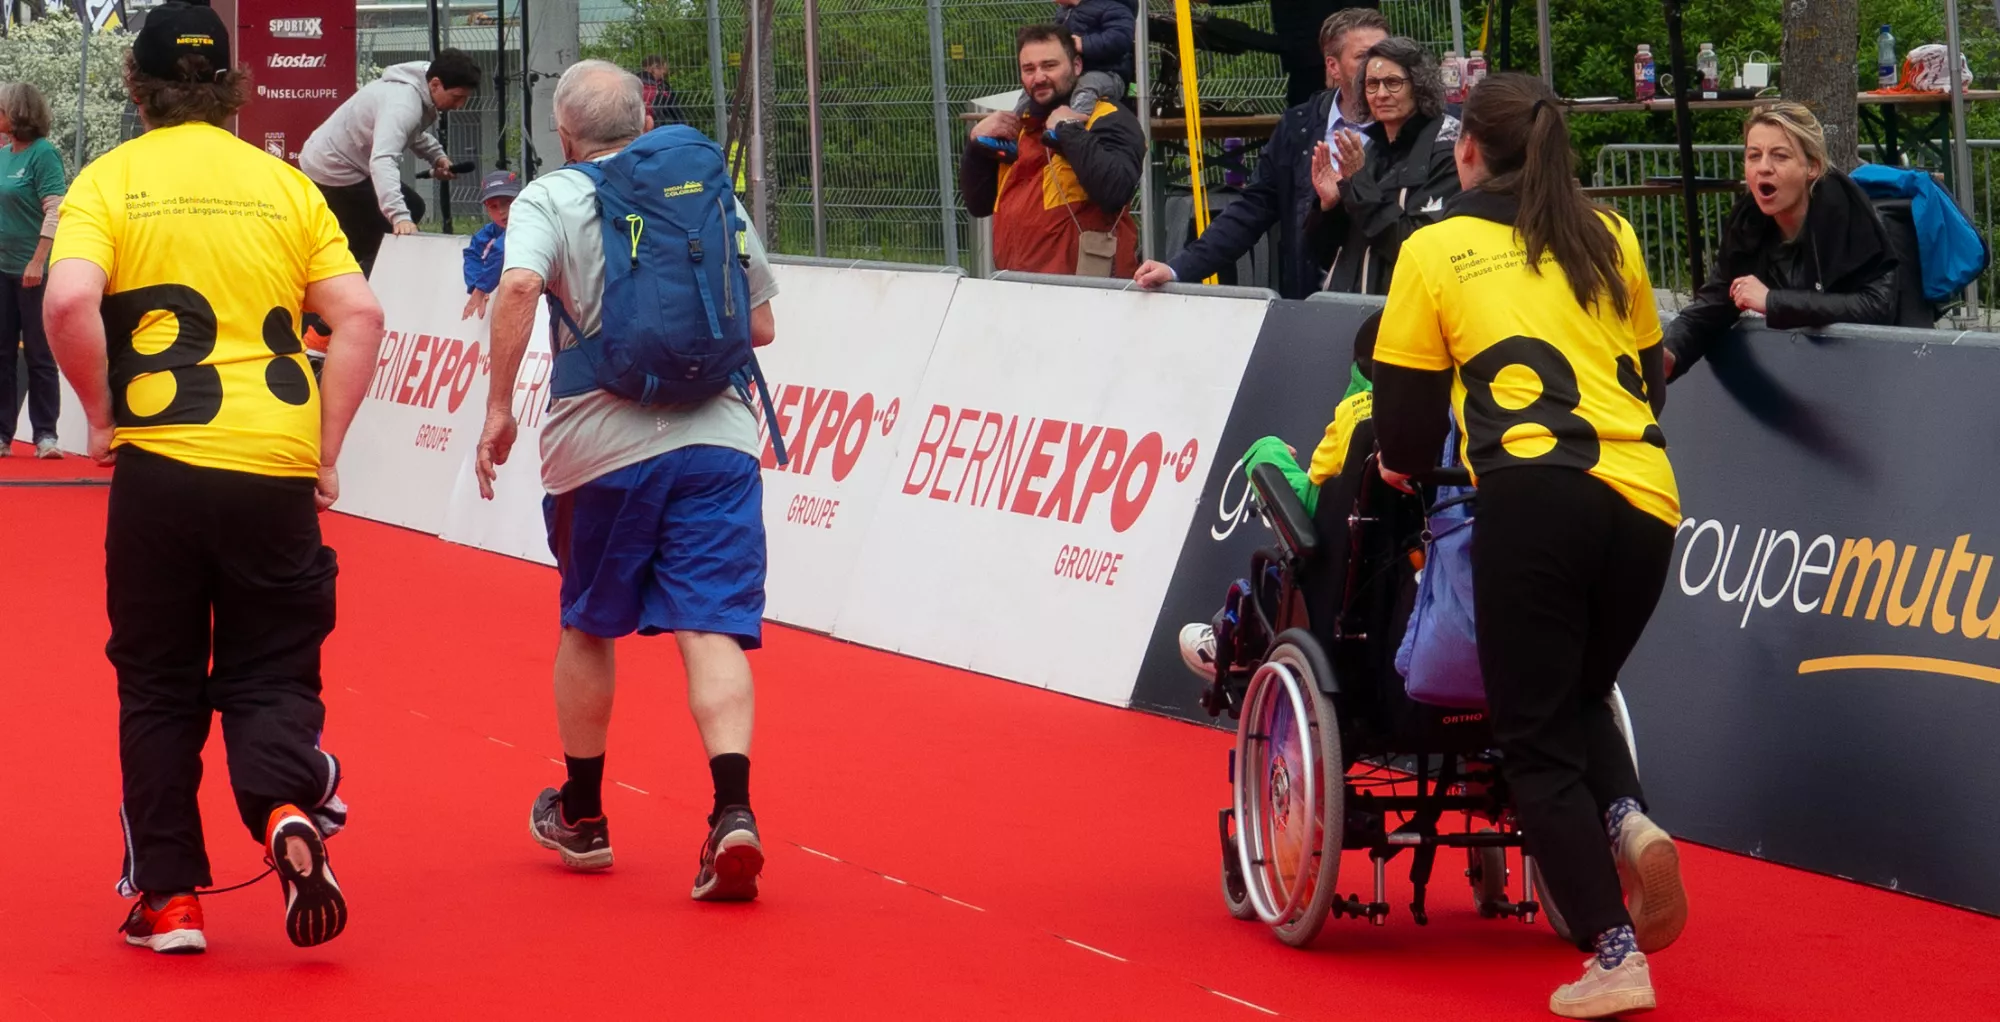 Bild zeigt Menschen, die an einem Laufwettbewerb teilnehmen, darunter auch welche in einem Rollstuhl